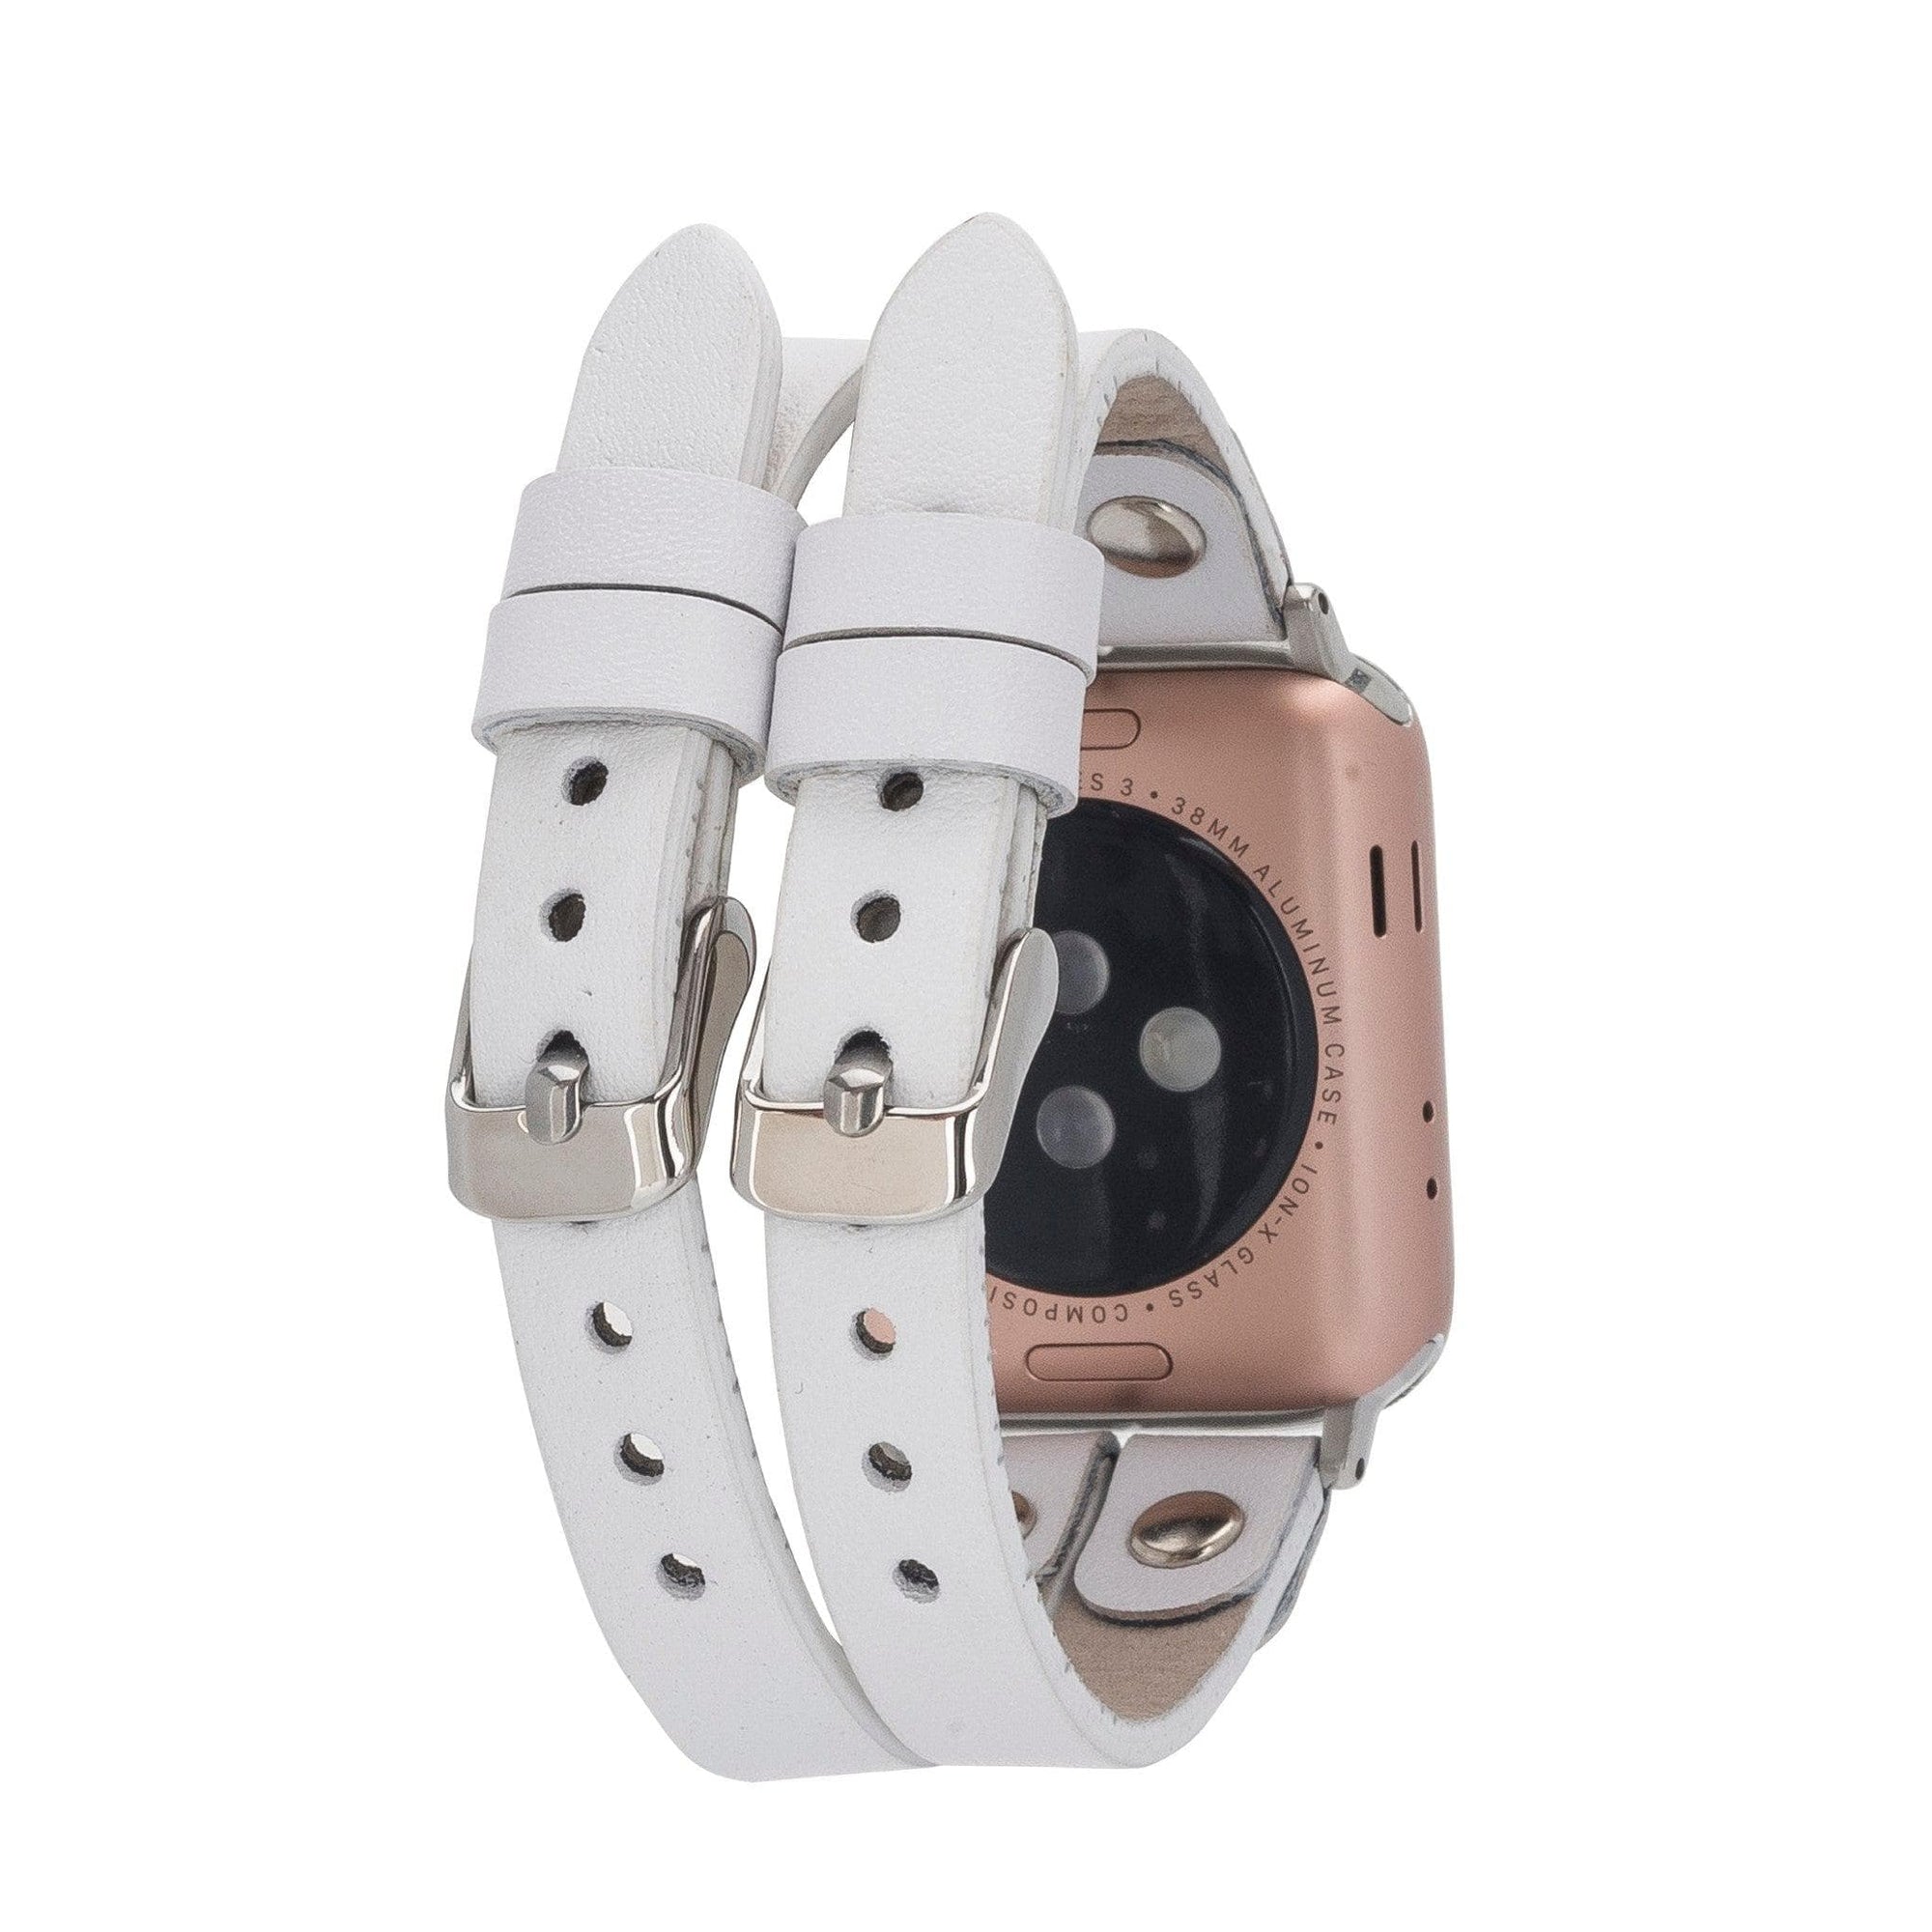 B2B- Durham Ely Apple Watch Leather Straps F3 / Silver Bouletta B2B